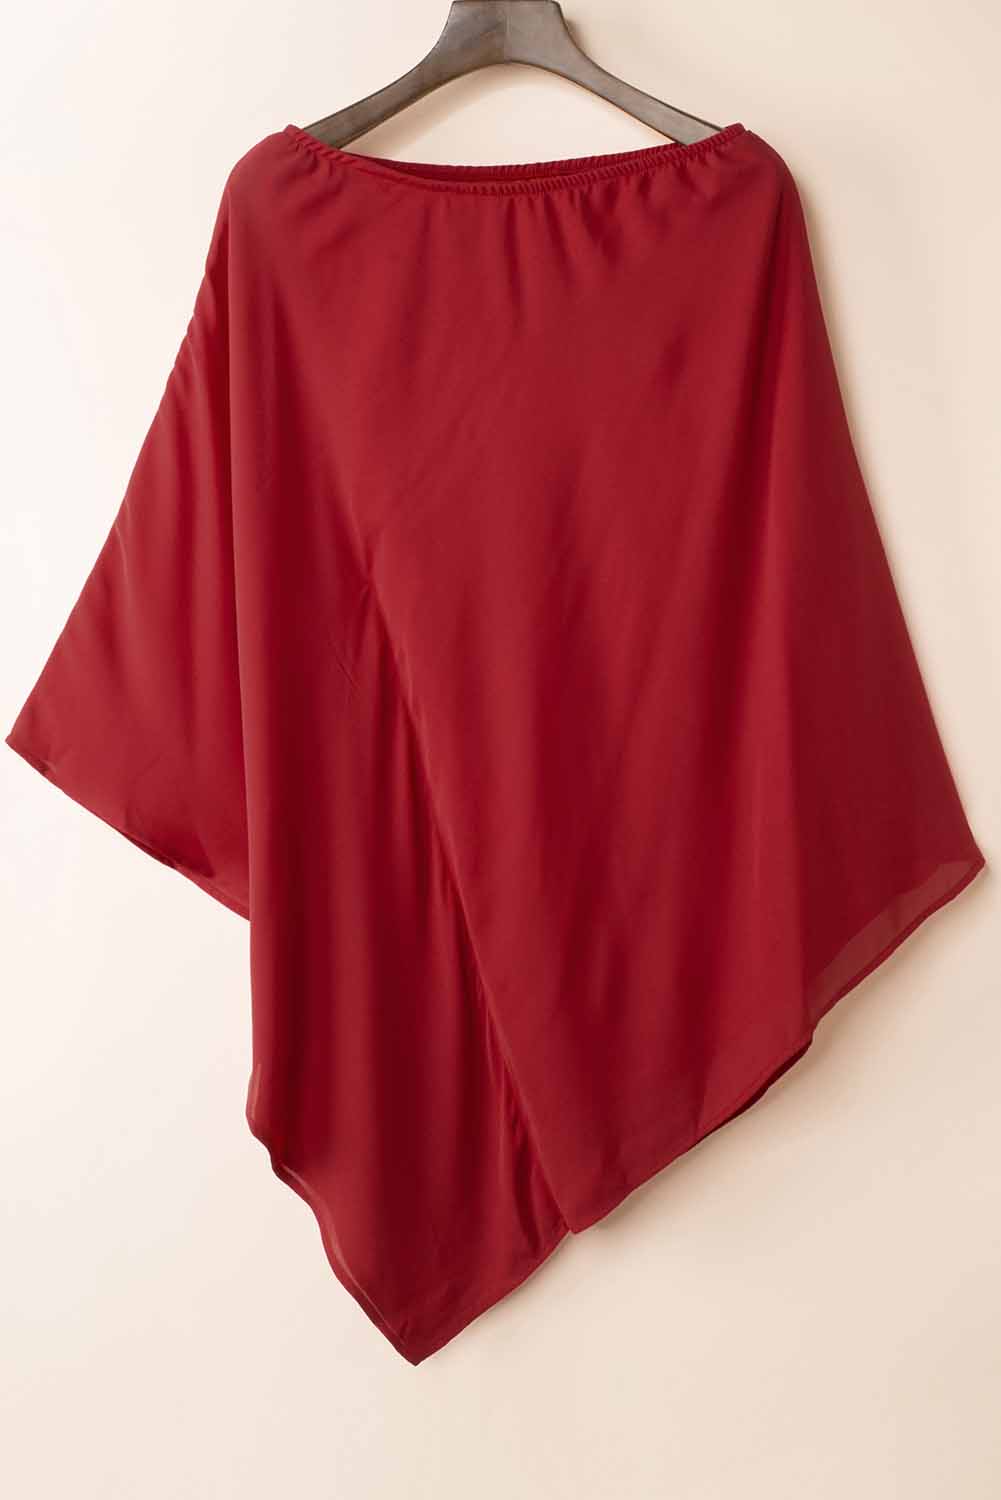 Rotes, einfarbiges Minikleid mit einer Schulter und Fledermausärmeln